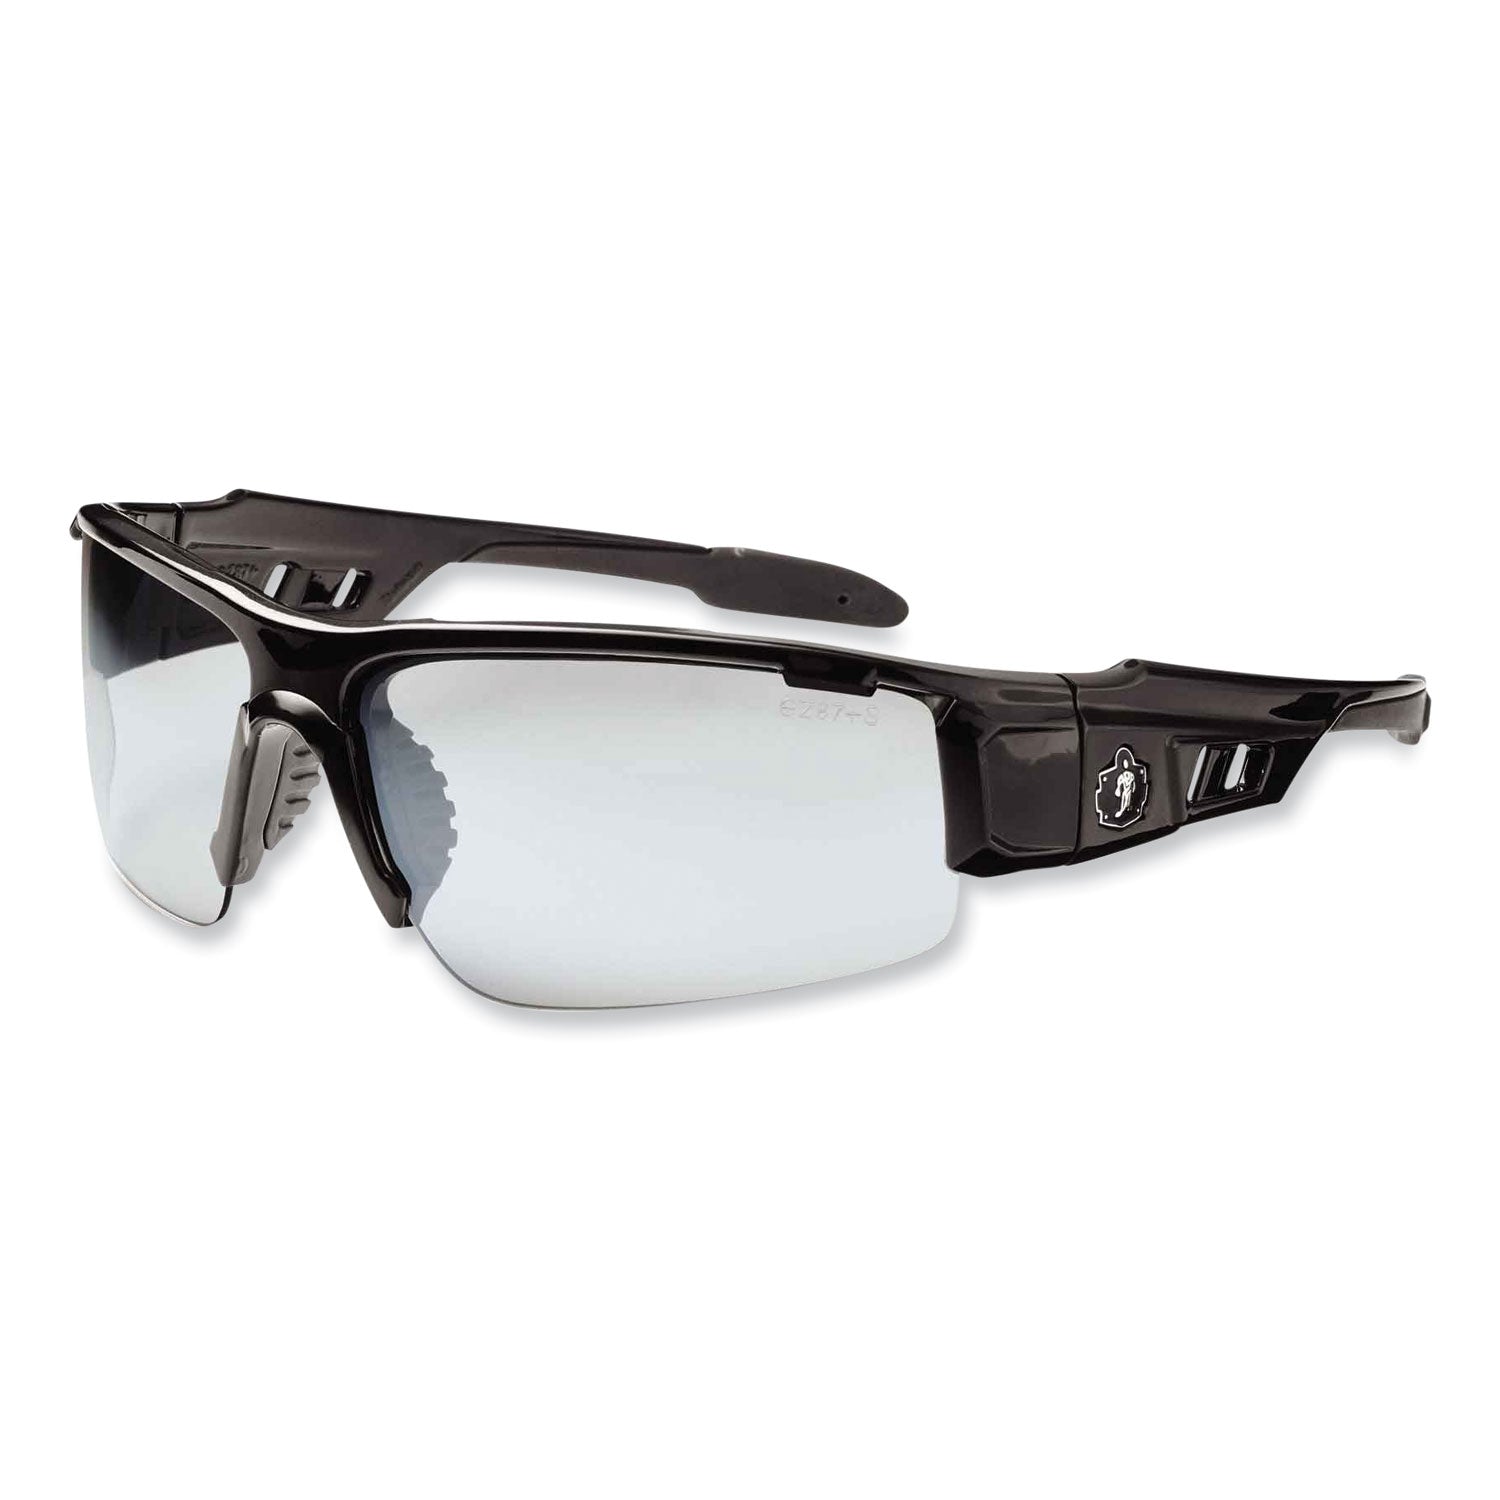 skullerz-dagr-safety-glasses-black-nylon-impact-frame-antifog-indoor-outdoor-polycarbonate-lens-ships-in-1-3-business-days_ego52083 - 1